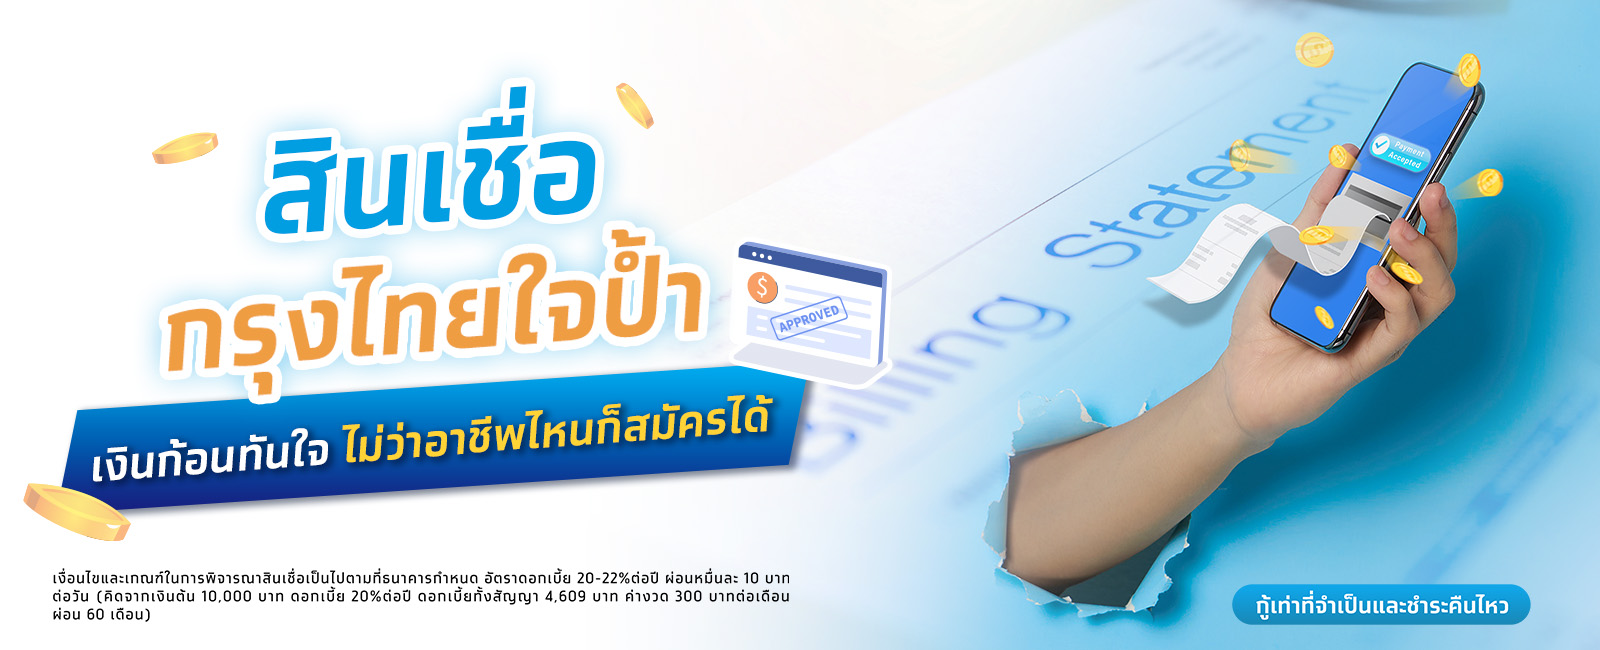 สินเชื่อเงินด่วนกรุงไทยใจป้ำ